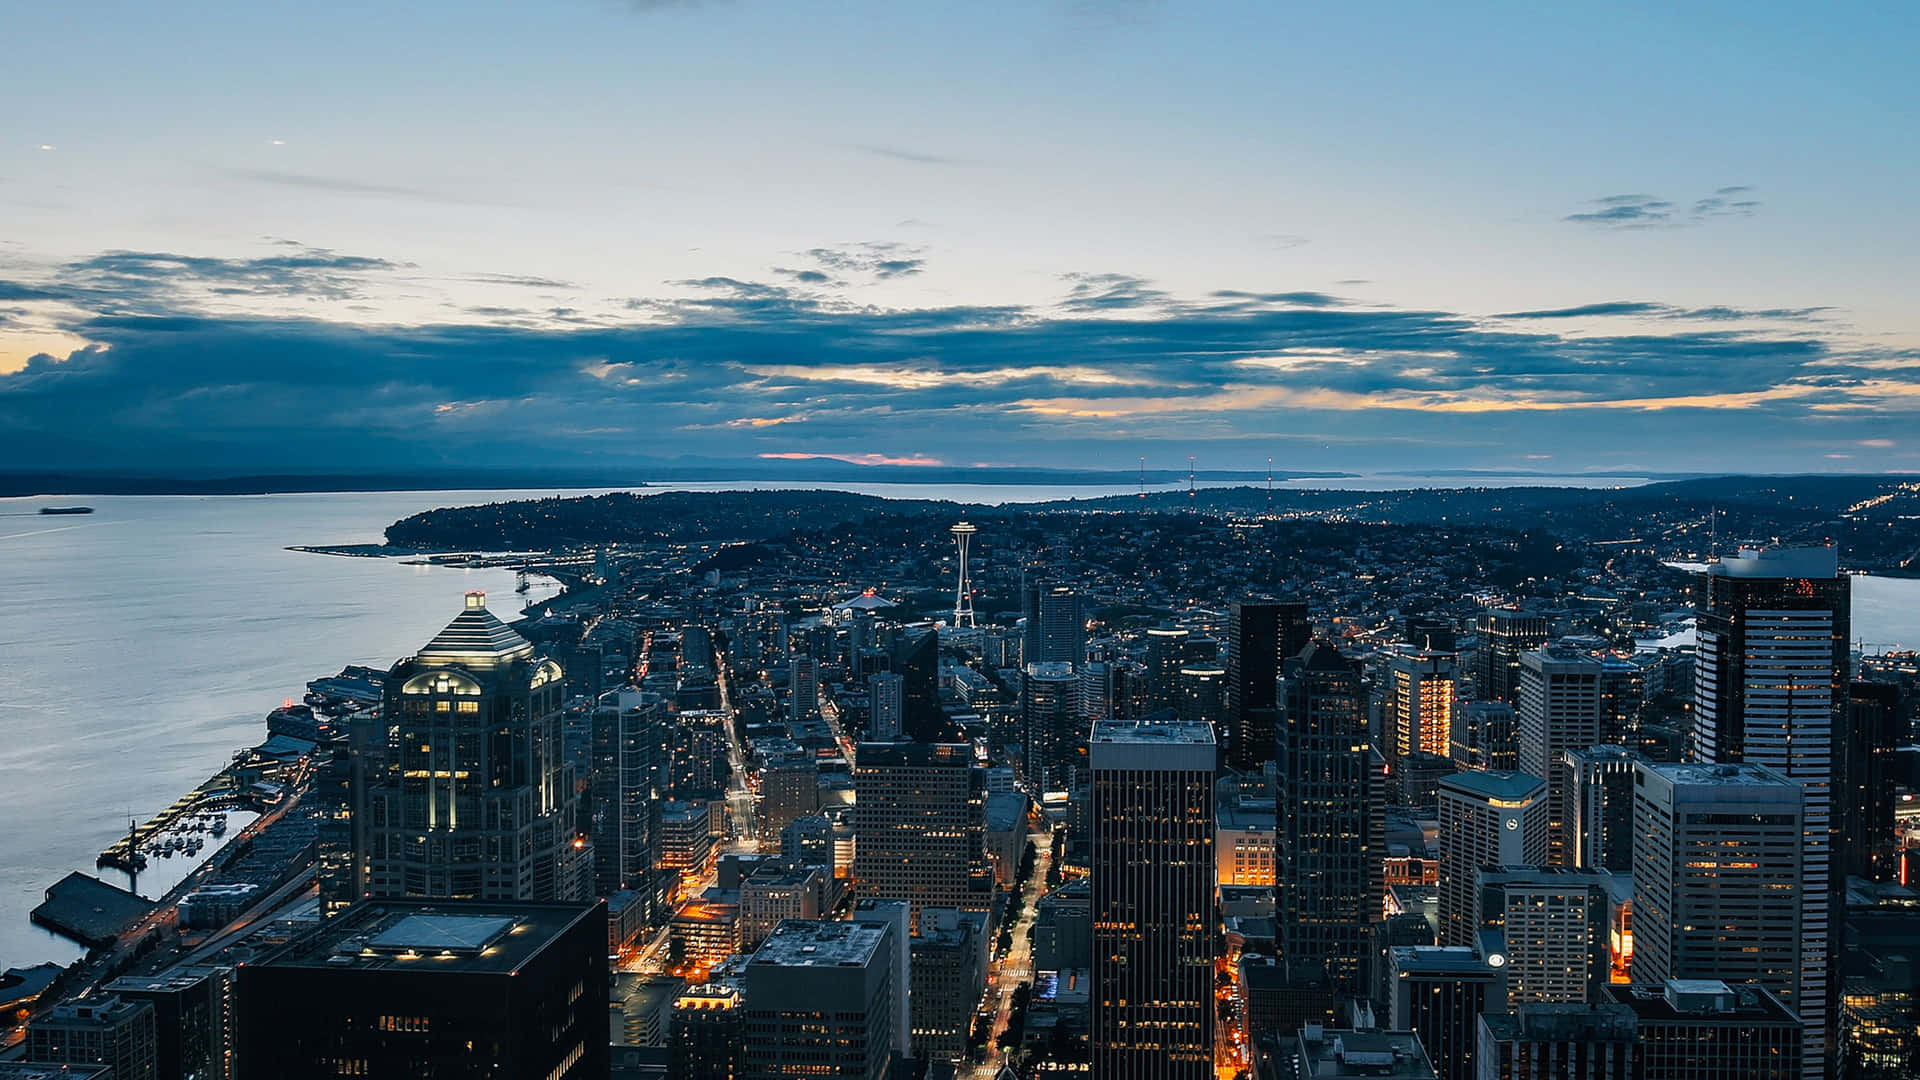 Lebendigestadt: Das Beste Hintergrundbild Von San Francisco